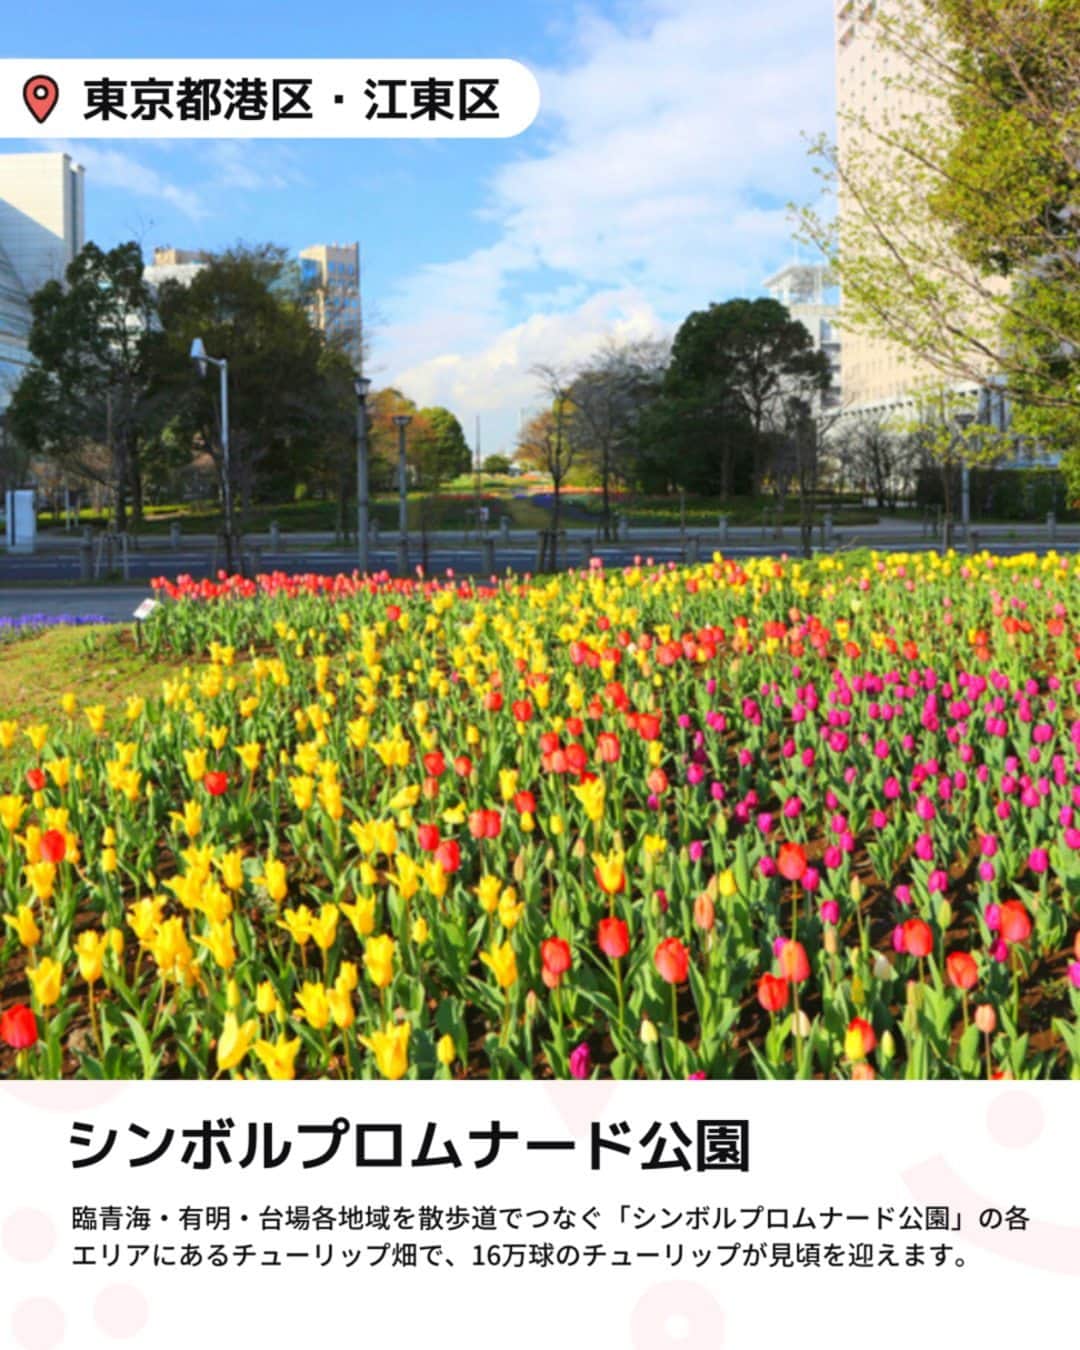 iko-yo（いこーよオフィシャル）さんのインスタグラム写真 - (iko-yo（いこーよオフィシャル）Instagram)「「都内の大規模 チューリップ畑6選」 今回ピックアップしたのは↓ ーーーーーーーーーーーーーーーーーー  📍東京都立川市 【国営昭和記念公園】 昭和天皇御在位50年を記念して造られた国営公園です。東京ドーム約39個分の広大な敷地では、1年を通してさまざまな花が観賞できます。また、園内を渓流広場から北へ進むと、巨大なトランポリン「雲の海（ふわふわドーム）」や日本一の大きさのハンモック「虹のハンモック」などが子供たちに人気の遊び場「こどもの森」もあります。  📍 東京都港区・江東区 【シンボルプロムナード公園】 公園内はウエスト・センター・イーストという3つのエリアに分かれており、それぞれにシンボリックなモニュメントやイベント会場が設置されています。新交通ゆりかもめ「お台場海浜公園駅」～「有明駅」の各駅より下車、徒歩すぐ。りんかい線「東京テレポート駅」「国際展示場駅」下車、徒歩すぐと都市にありながら、海と自然に囲まれた景色を満喫できるスポットです。  📍 東京都千代田区 【日比谷公園】 四季折々の花の名所としても人気のスポットです。敷地内には、幾何学文様の洋風花壇や噴水などがあり、公会堂や大小音楽堂、千代田区立日比谷図書文化館などの文化施設もあって、1年を通してさまざまなイベントが開催されます。  📍 東京都足立区 【足立区都市農業公園】 「自然と遊ぶ、自然に学ぶ、自然と共に生きる」をテーマにした農業公園。子供たちには遊具広場にある長い滑り台や遊具アスレチックが人気です。また、園内には田んぼや畑があり、無農薬無化学肥料での栽培が行われているほか、年間を通じて、自然あそびや染め物体験、ミツバチ観察などさまざまな教育プログラムを開催。 📍 東京都江東区 【猿江恩賜公園】 スポーツを中心に、気持ちの良い広場でさまざまなアクティビティが楽しめる公園です。園内の北側には、テニスコートやジョギングコース、大人向けの健康遊具が設置された健康広場があるほか、遊具がある冒険広場があるので、子供連れは遊んで帰るのがおすすめ！  📍 東京都羽村市 【根がらみ前水田】 今年も「はむら花と水のまつり2023」が開催されます。3/25～4/9の「前期さくらまつり」は、例年とは異なり、桜づつみ公園、水上公園・親水公園にて開催。4年振りに飲食店等の模擬店も出店予定となっています。「後期チューリップまつり」は、4/10～4/20に根がらみ前水田にて開催されます。  ※2023年3月24日時点の情報です。 最新の情報は公式HPや「いこーよ」サイトでご確認ください。 ーーーーーーーーーーーーーーーーーーー おでかけ情報量は日本最大級！ 子どもとお出かけ情報サイト「いこーよ」 「親子でおでかけしたい場所」をご紹介させていただいています！  お子さんとのおでかけの思い出の写真を、このアカウントをフォローの上#いこーよ をつけてぜひ投稿してください。魅力的な写真は、いこーよ公式SNSで紹介させていただきます！  募集中タグ＃いこーよ  「子どもと行きたい！」と思ったら保存が便利！ プロフィールのURLから「いこーよ」のサイトに行くと、他の投稿やオトクな情報などが載っています♪ ☞ @ikoyo_odekake  #いこーよ #お出かけ #おでかけ #お出かけスポット #子育て #こどものいる暮らし #子連れスポット #いこーよお出かけ部 #東京ママ#東京観光#東京旅行#チューリップ#チューリップ畑#国営昭和記念公園#シンボルプロムナード公園#日比谷公園#足立区都市農業公園#猿江恩賜公園#根がらみ前水田」3月29日 19時01分 - ikoyo_odekake